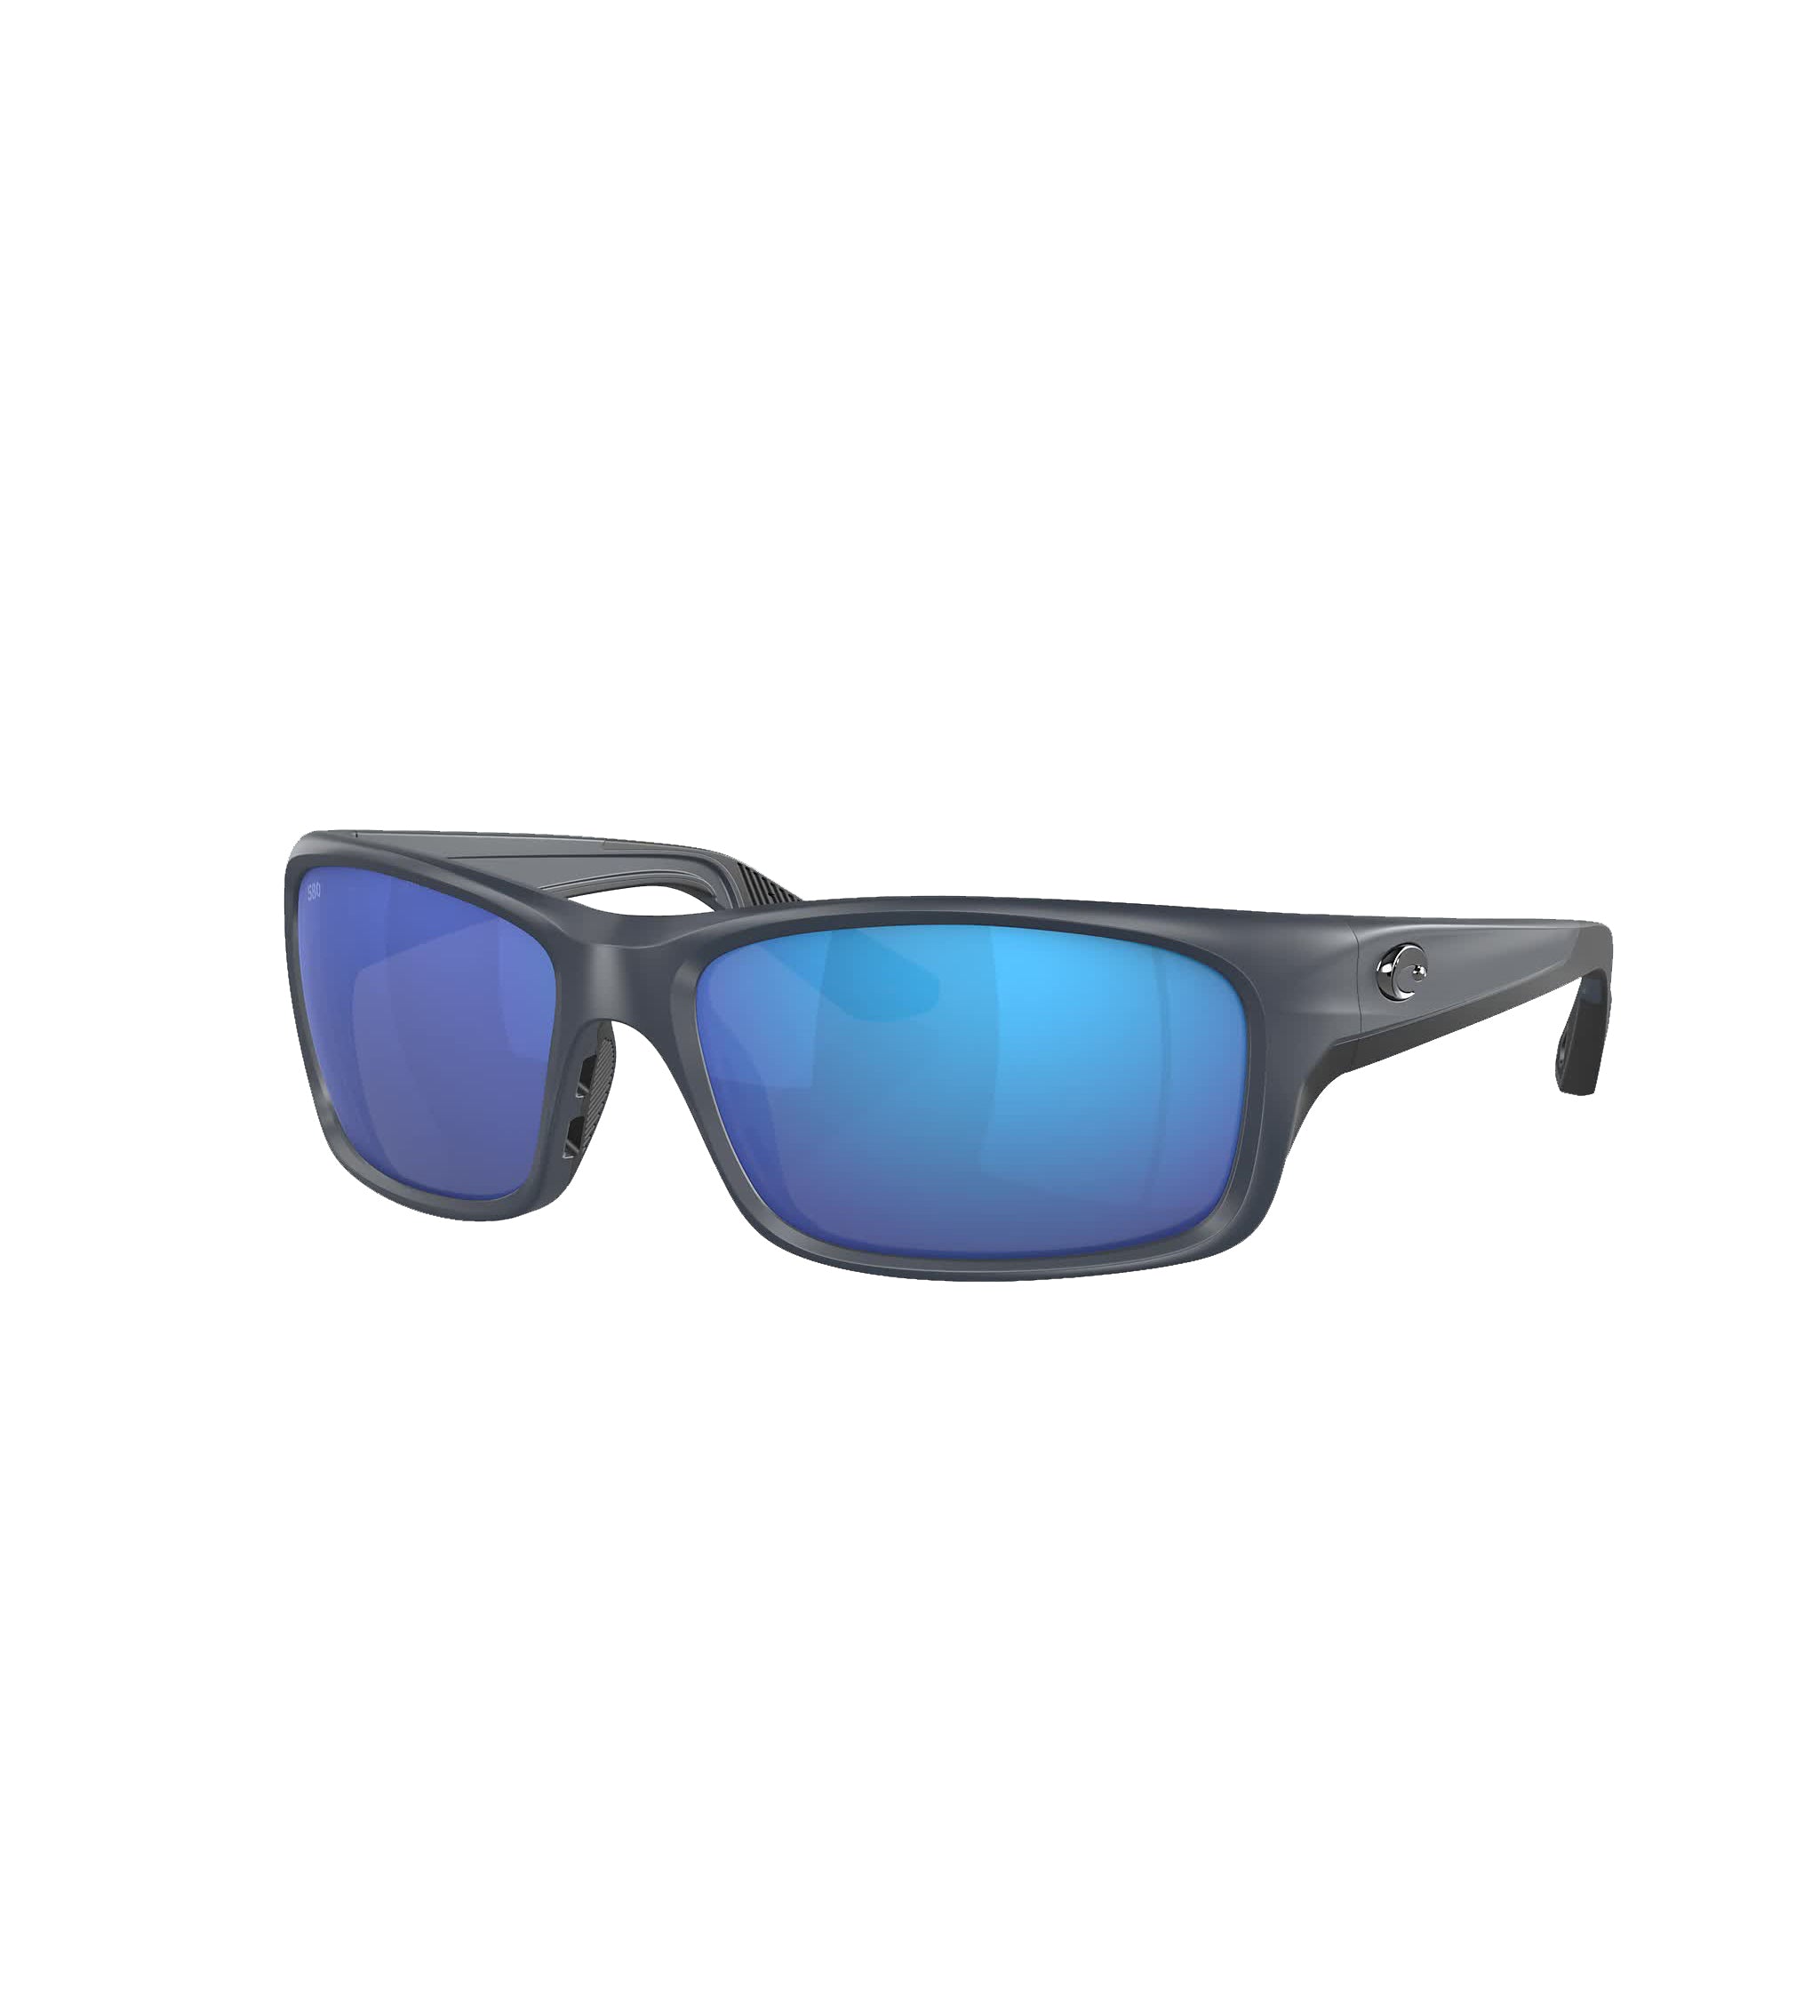 Costa Del Mar Jose Pro Polarized Sunglasses MidnightBlue BlueMirror580G